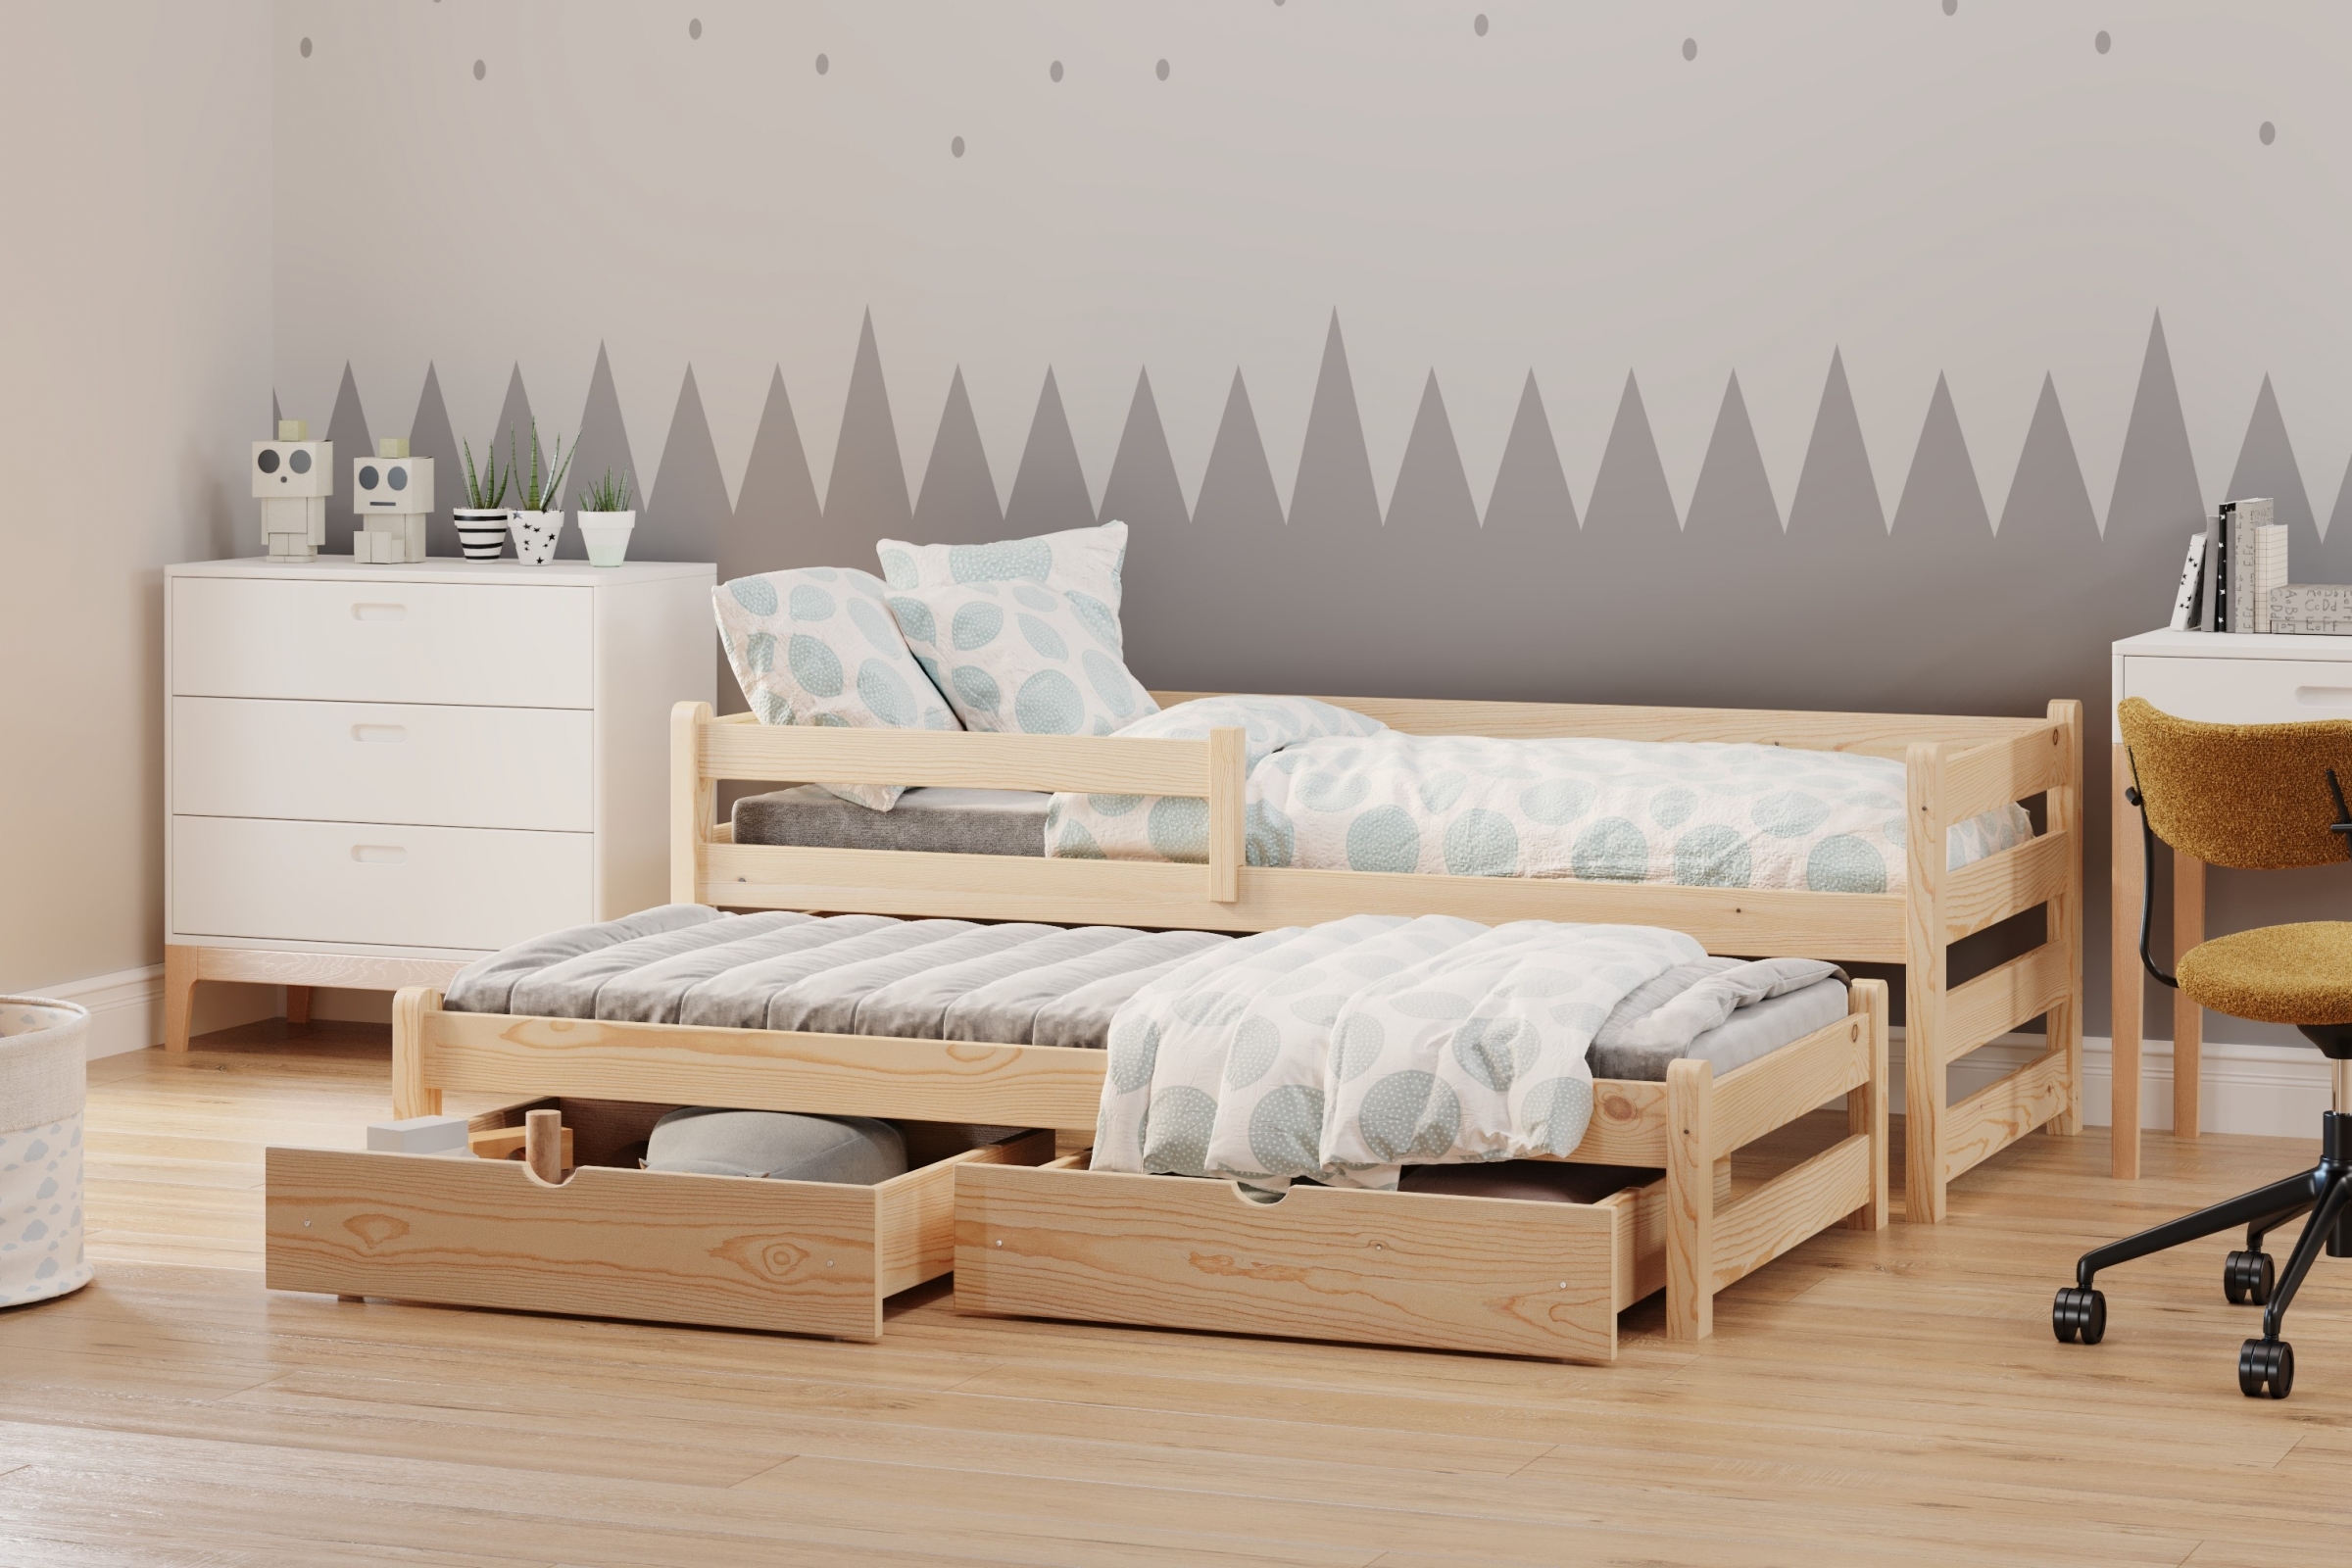 Detská posteľ prízemná s výsuvným lôžkom Alis DPV 001 - Borovica, 80x190 Posteľ prízemná s výsuvným lôžkom Alis - Farba Borovica - vizualizácia